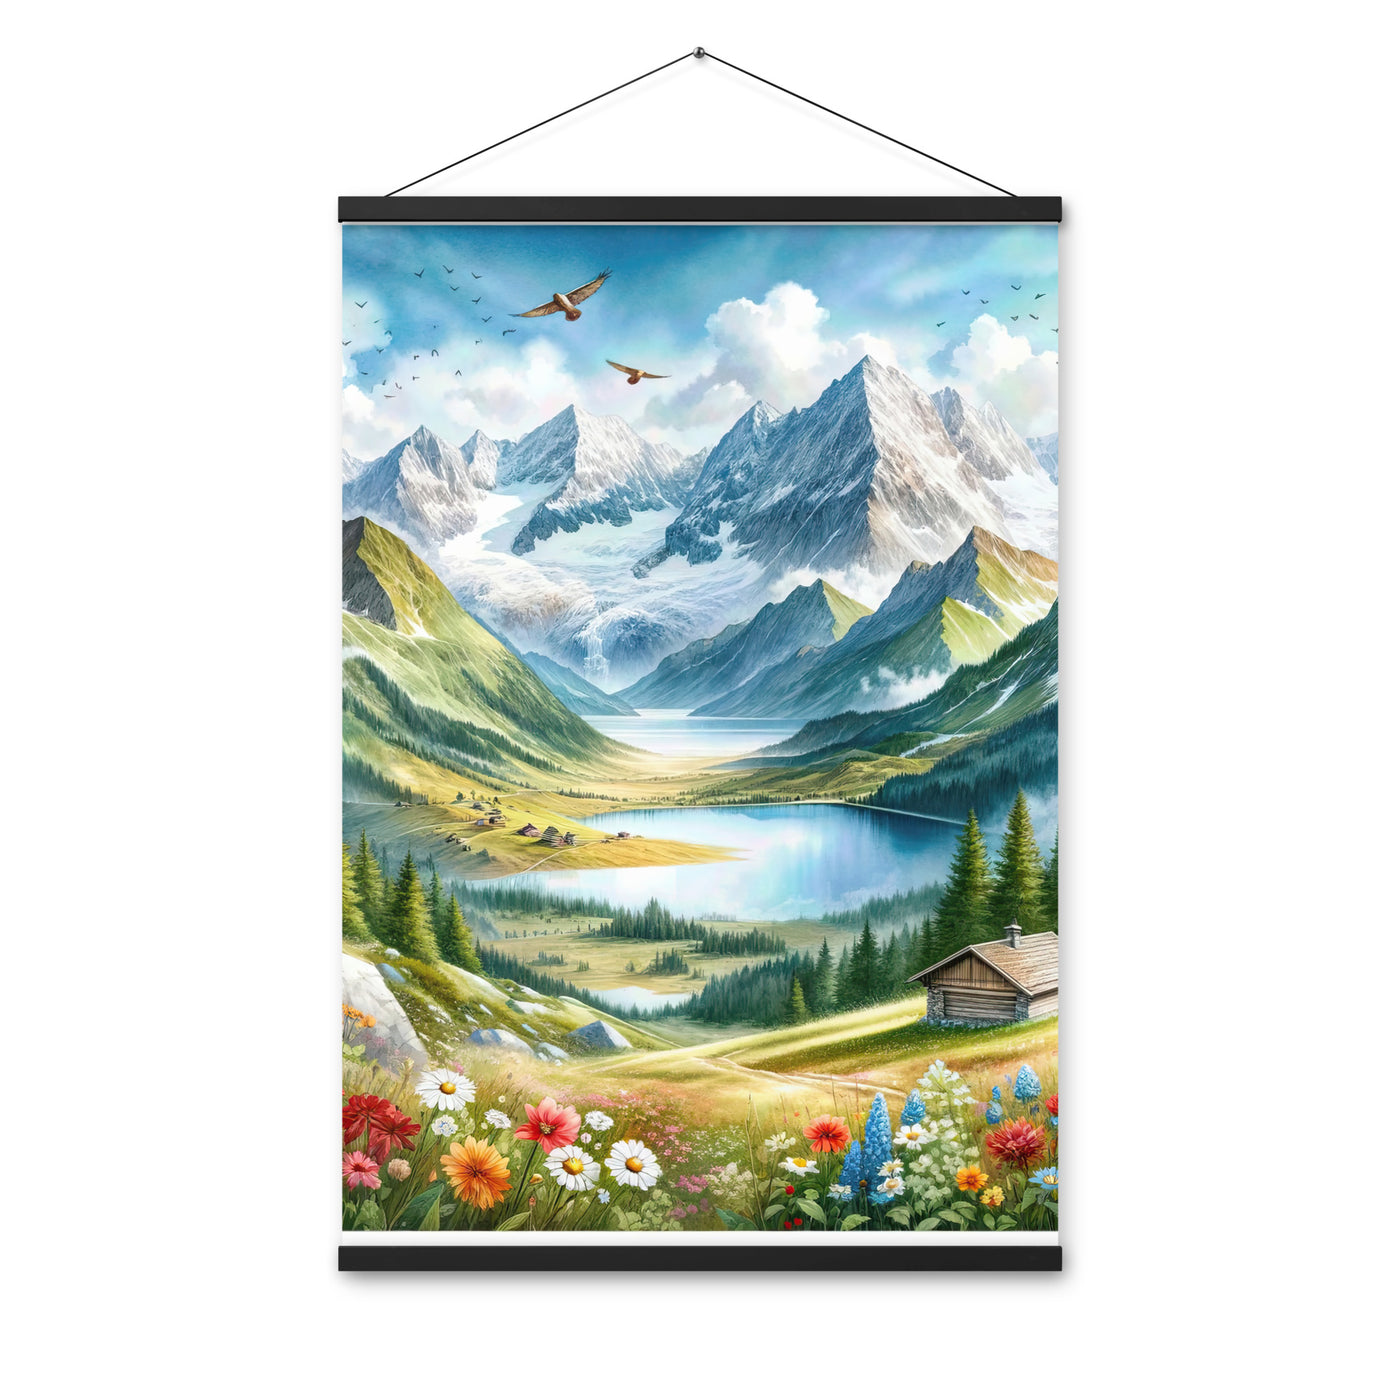 Quadratisches Aquarell der Alpen, Berge mit schneebedeckten Spitzen - Premium Poster mit Aufhängung berge xxx yyy zzz 61 x 91.4 cm